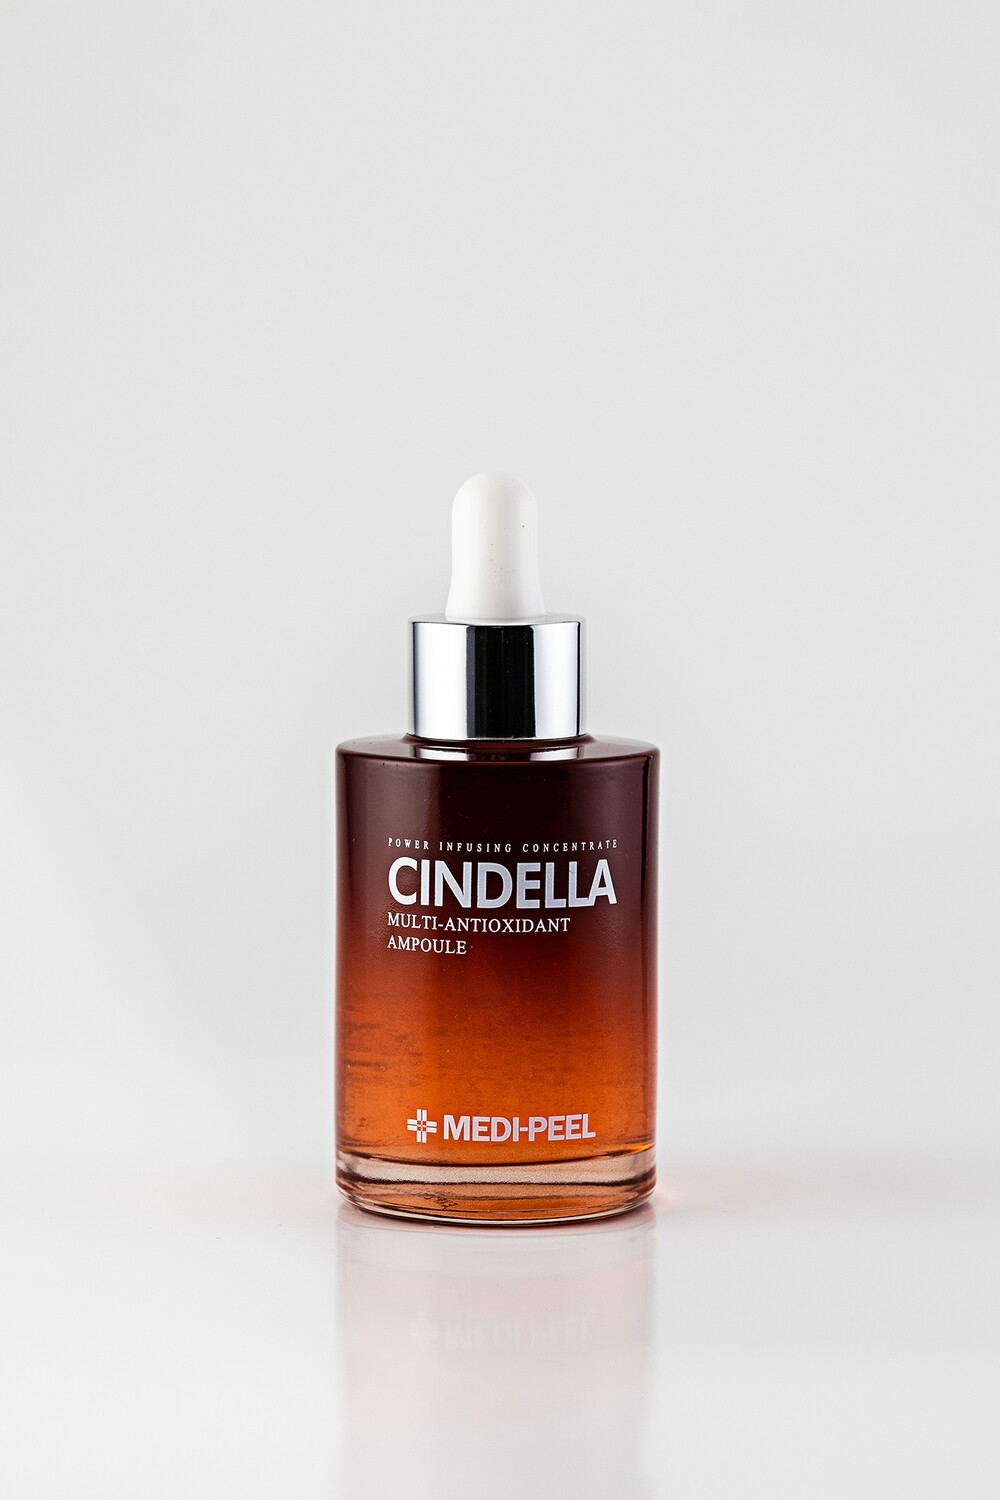 Medi-Peel Cindella Multi-Antioxidant Ampoule